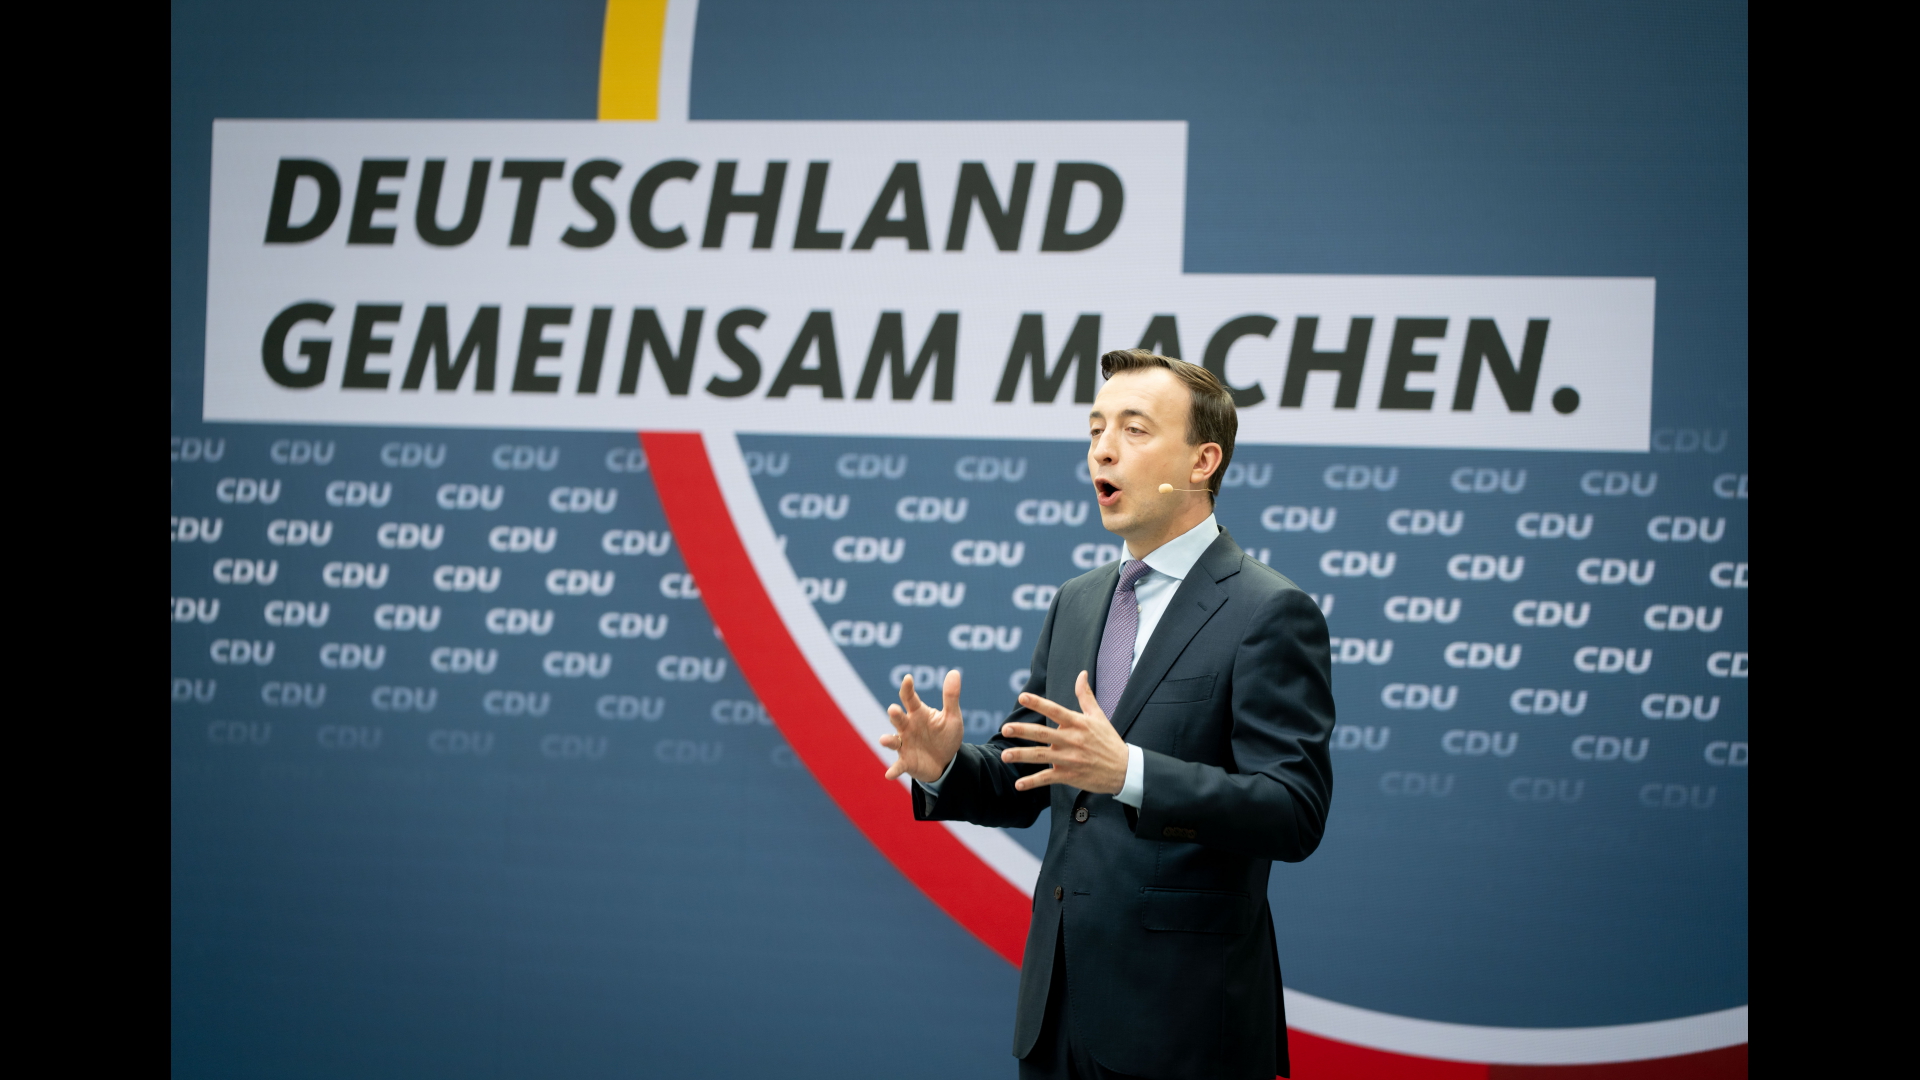 Paul Ziemiak (r), CDU-Generalsekretär, stellt die Kampagne der CDU Deutschlands für die Bundestagswahl vor.  | dpa